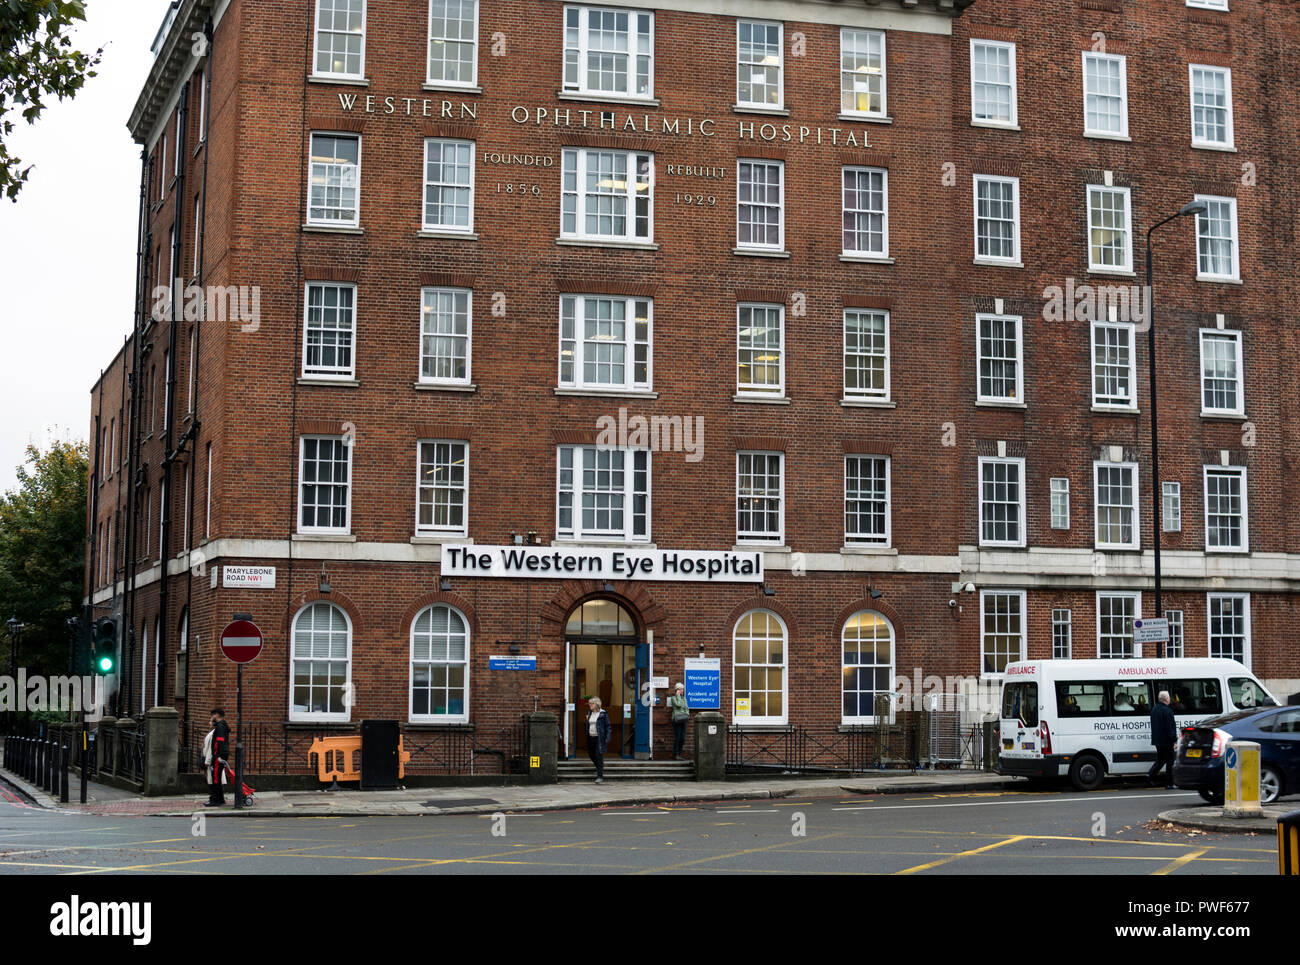 The Western Eye Hospital, Marylebone Road, London, UK Stock Photo - Alamy